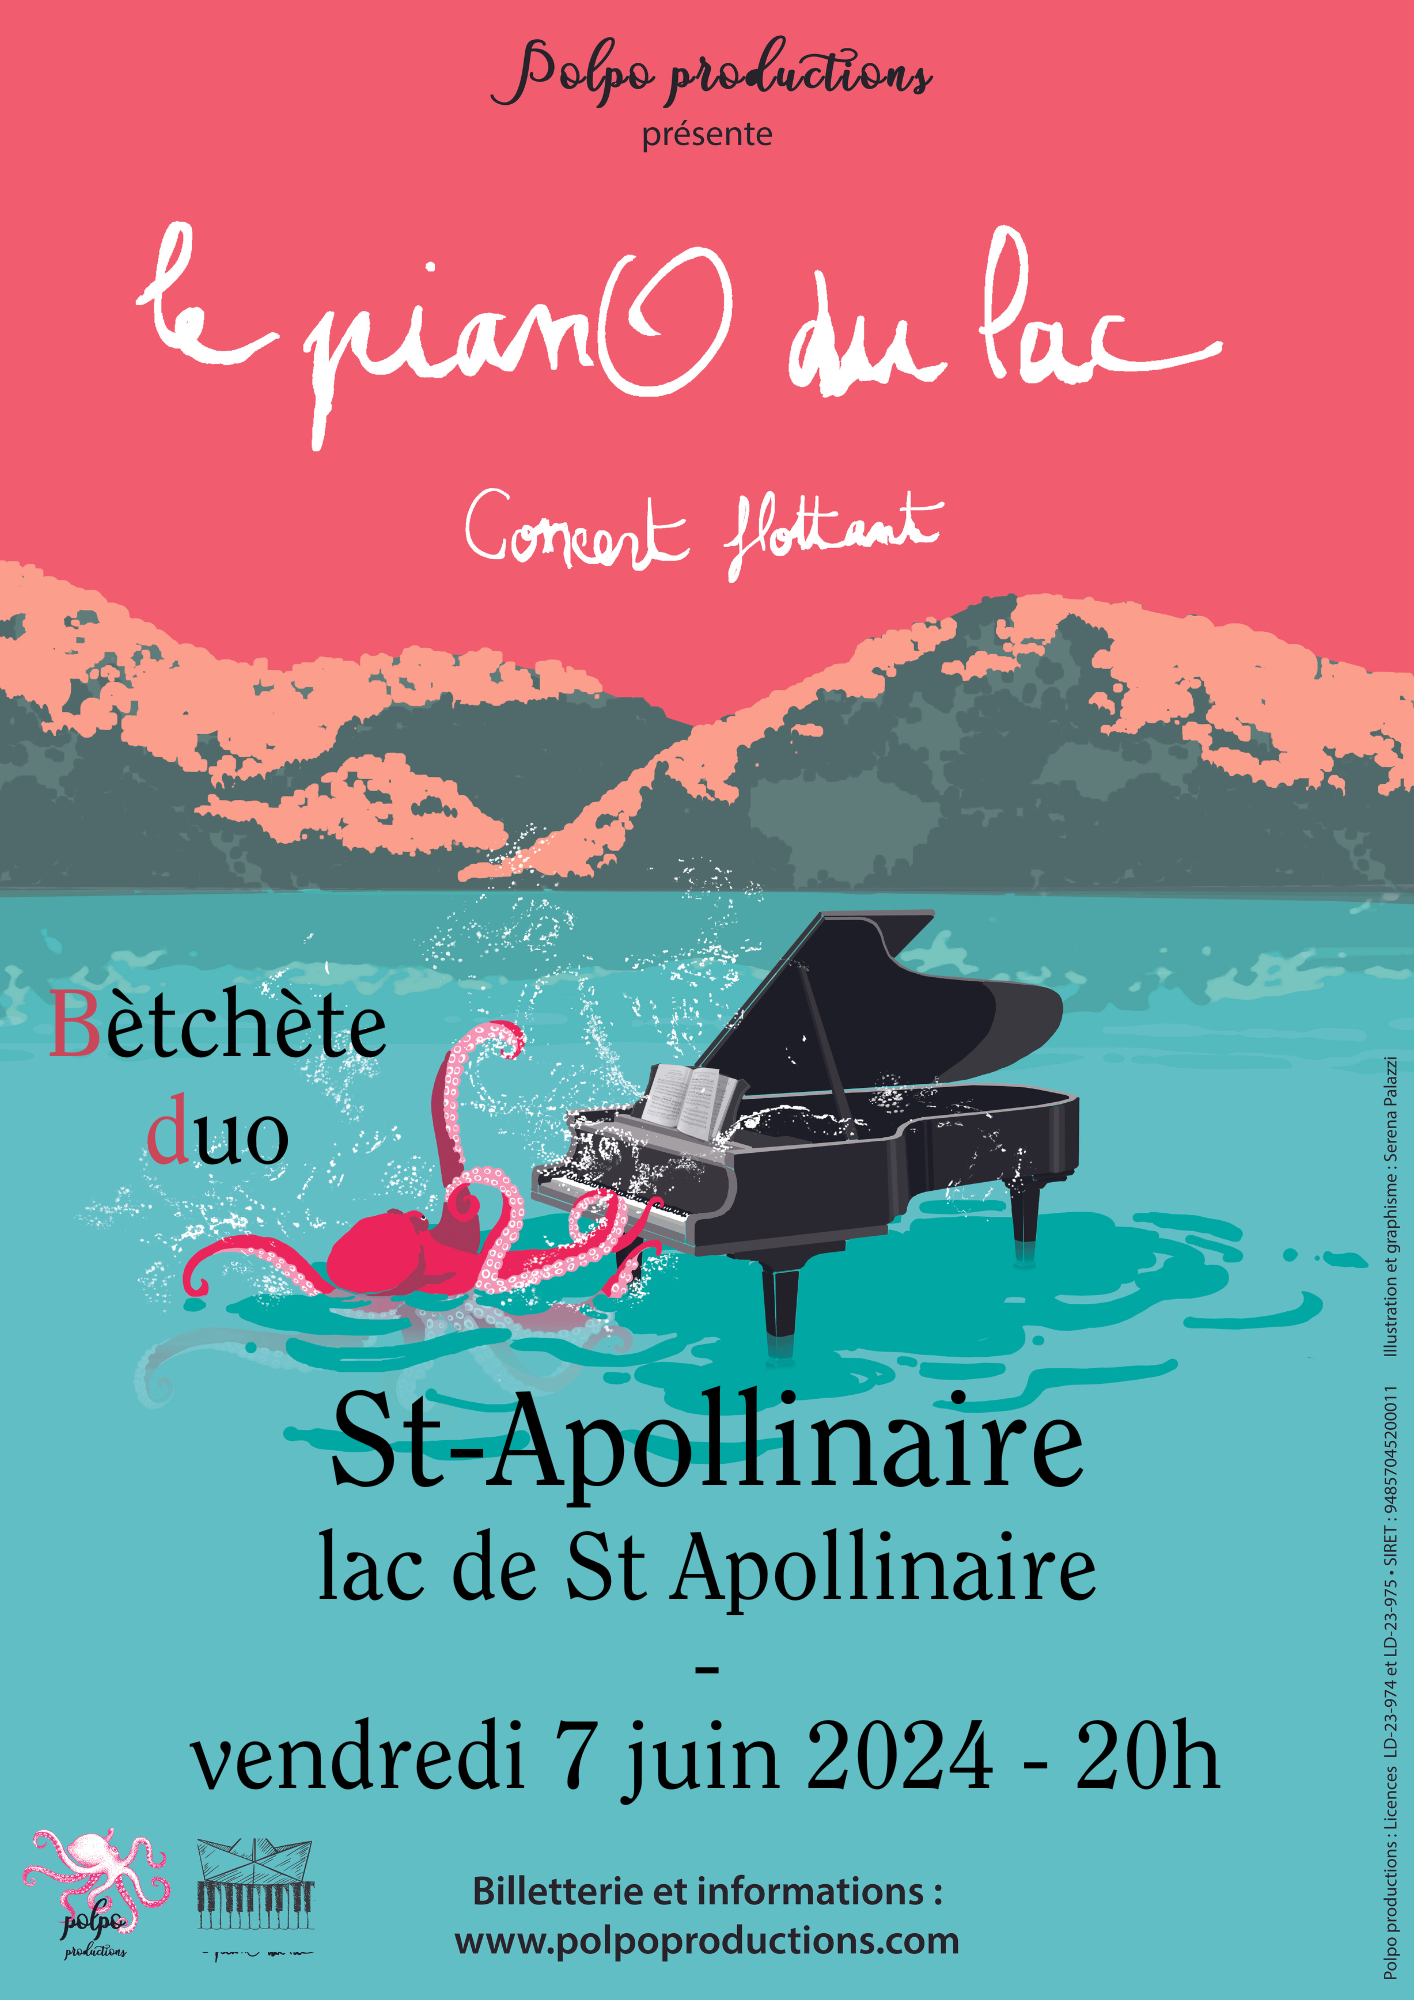 Concert flottant Le pianO du lac - Bètchète duo